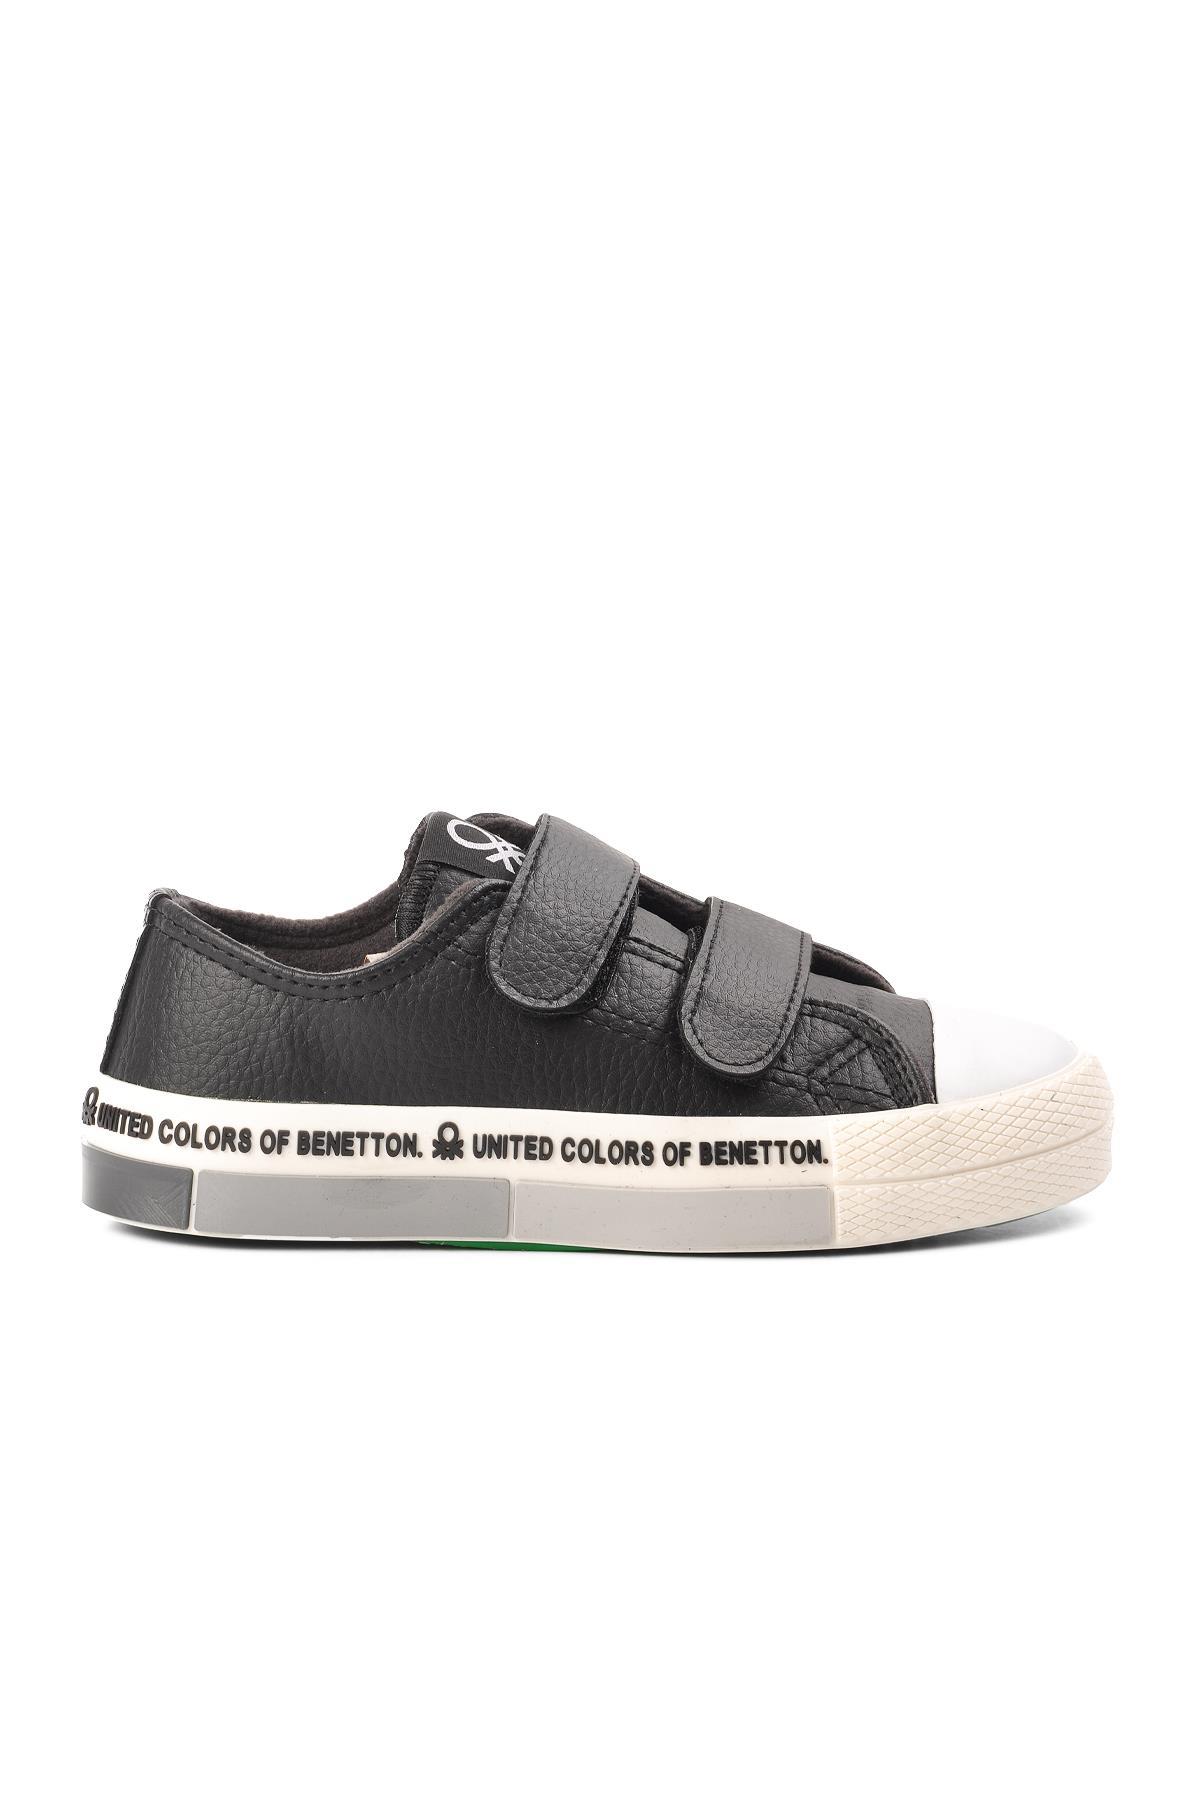 Benetton Bn-30848-F Siyah Cırtlı Çocuk Sneaker - Ayakmod